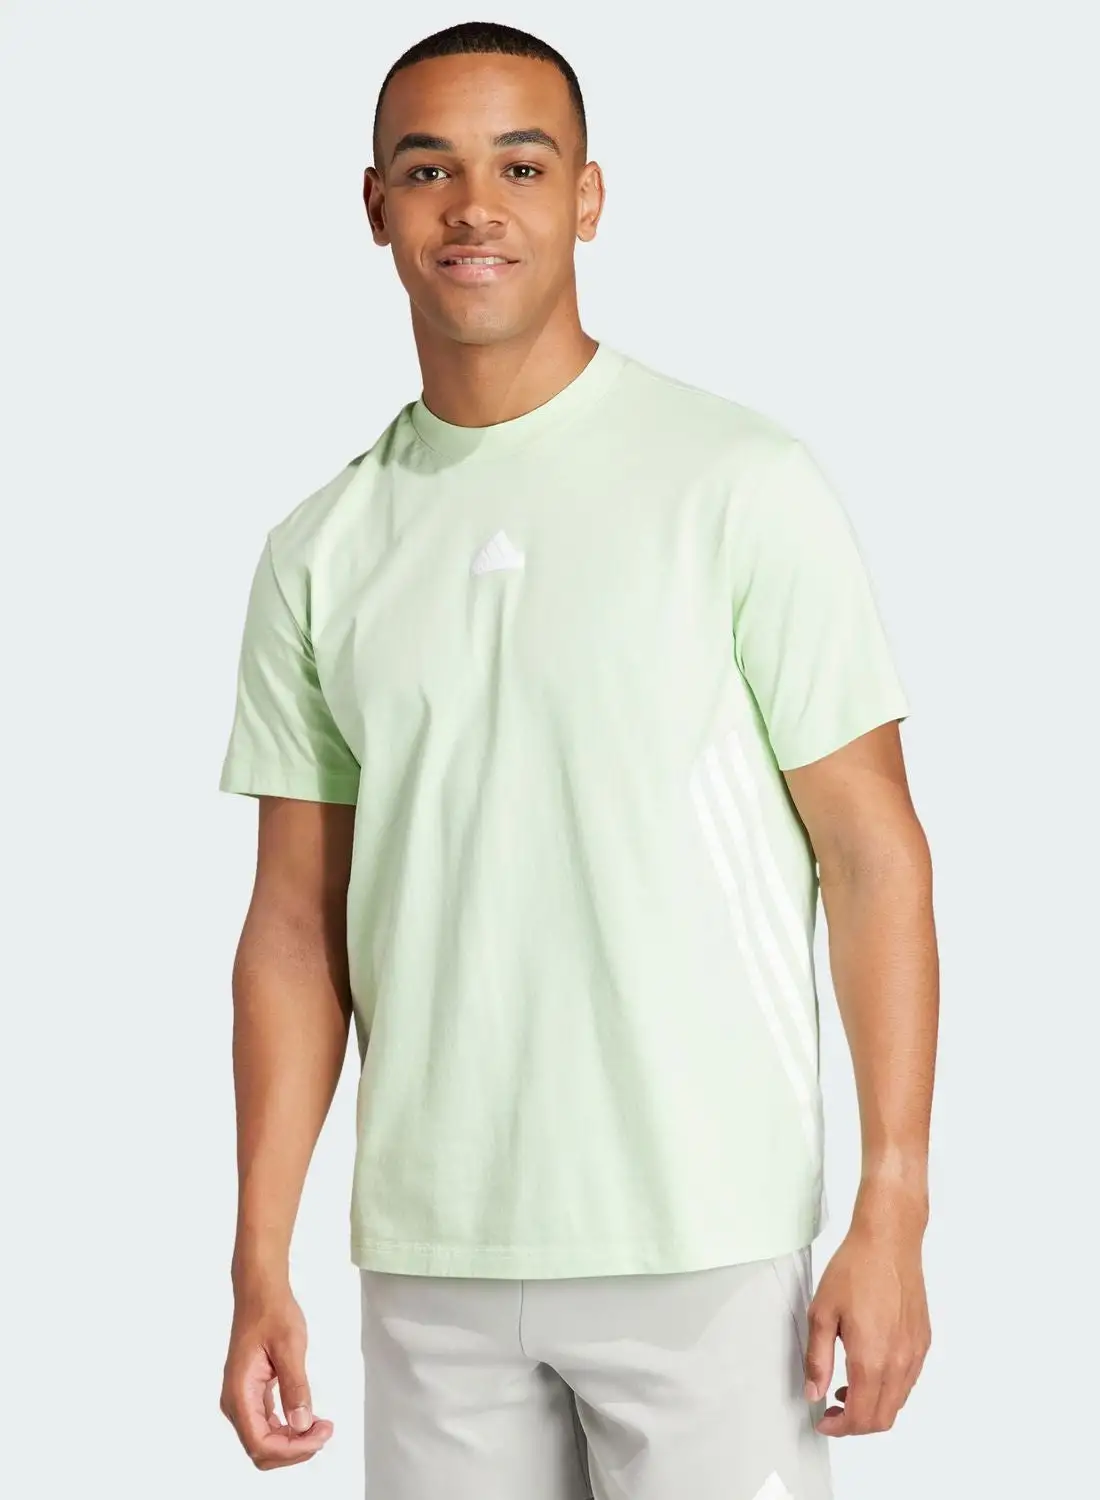 Adidas 3 Stripes Future Icons T-Shirt